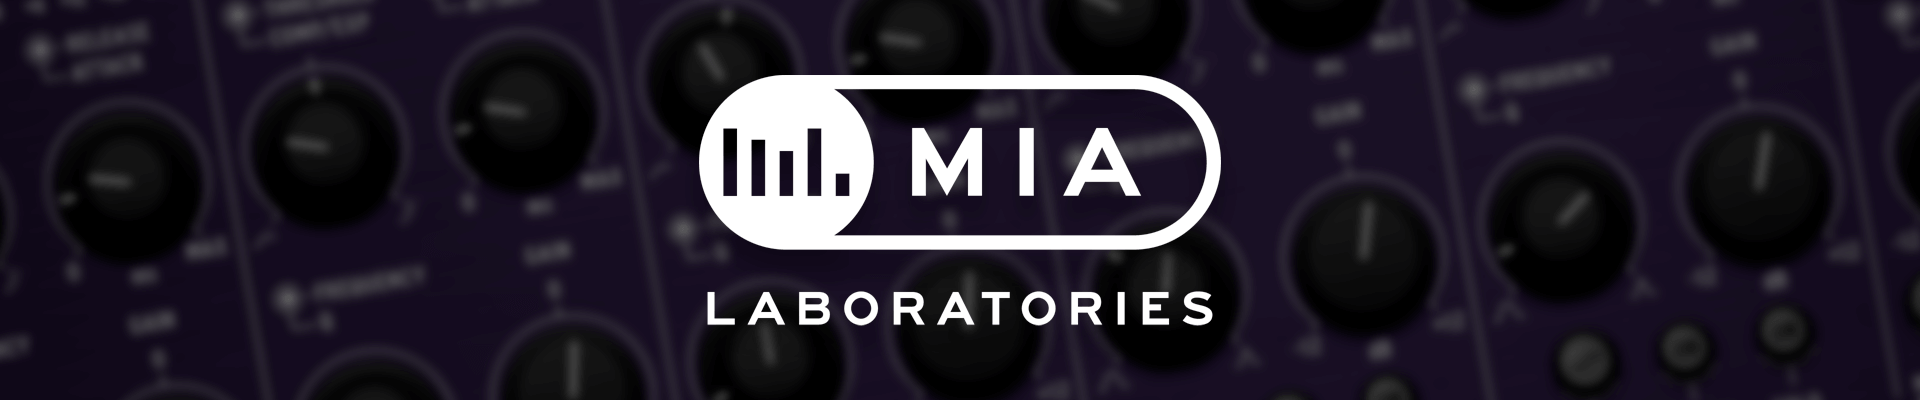 MIA Laboratories Banner